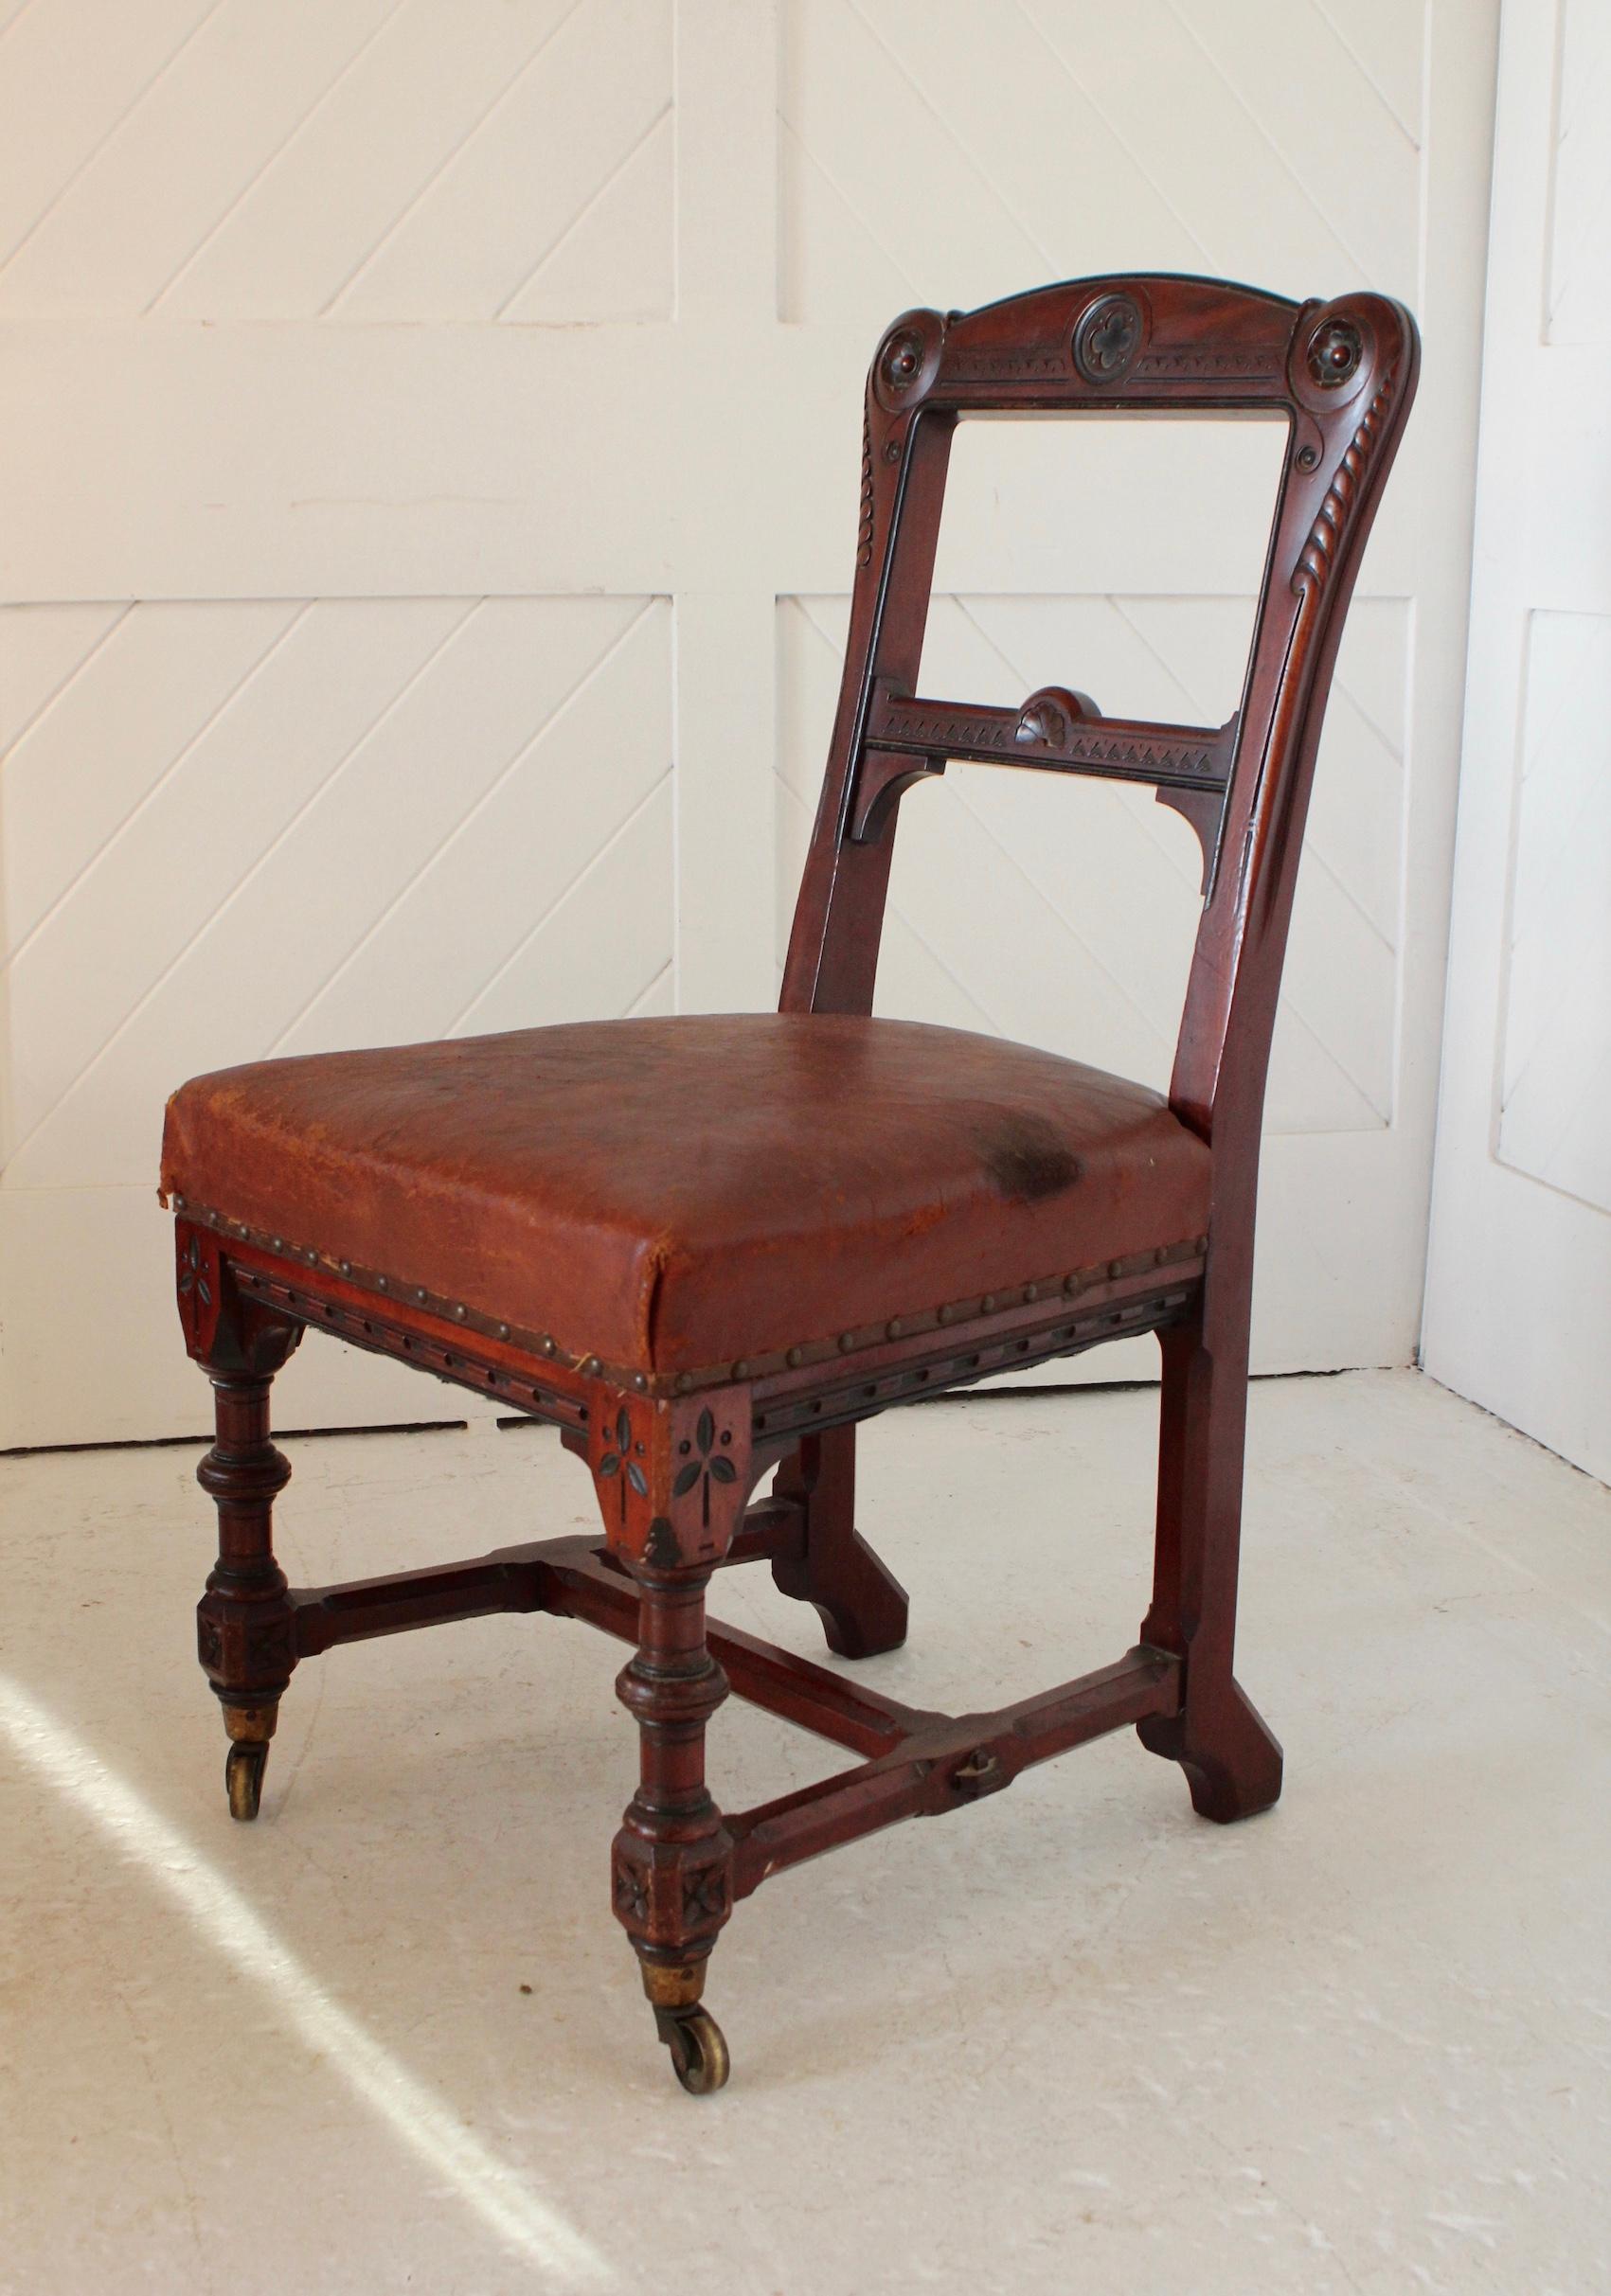 Paire de chaises en acajou de style néo-gothique
Sièges en cuir d'origine
Roulettes en laiton

Design/One et détails en ébène

Circa 1870

Holland & Sons 
